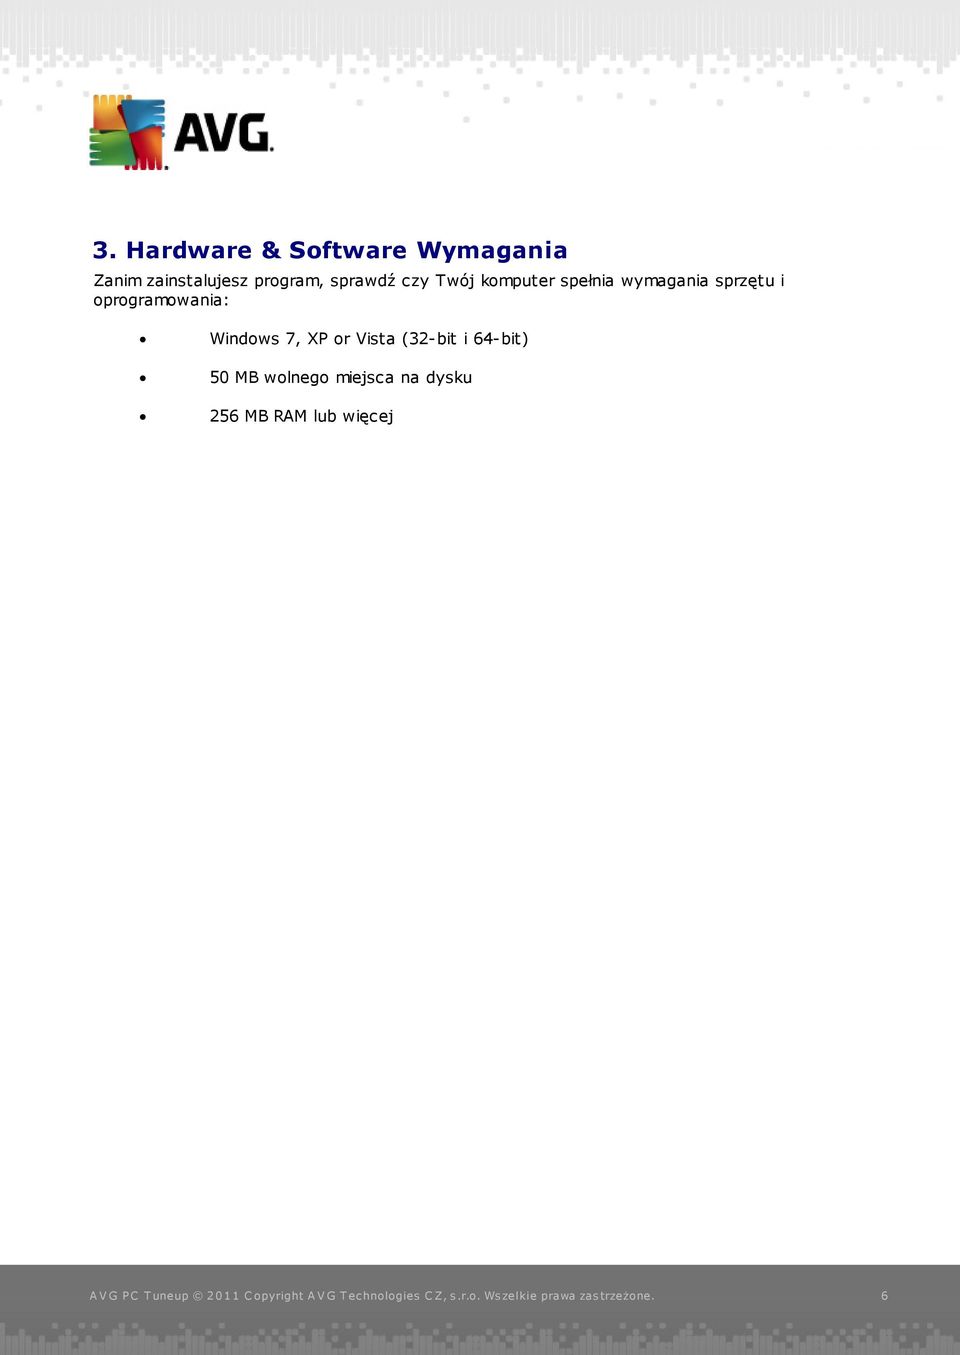 sprzętu i oprogramowania: Windows 7, XP or Vista (32-bit